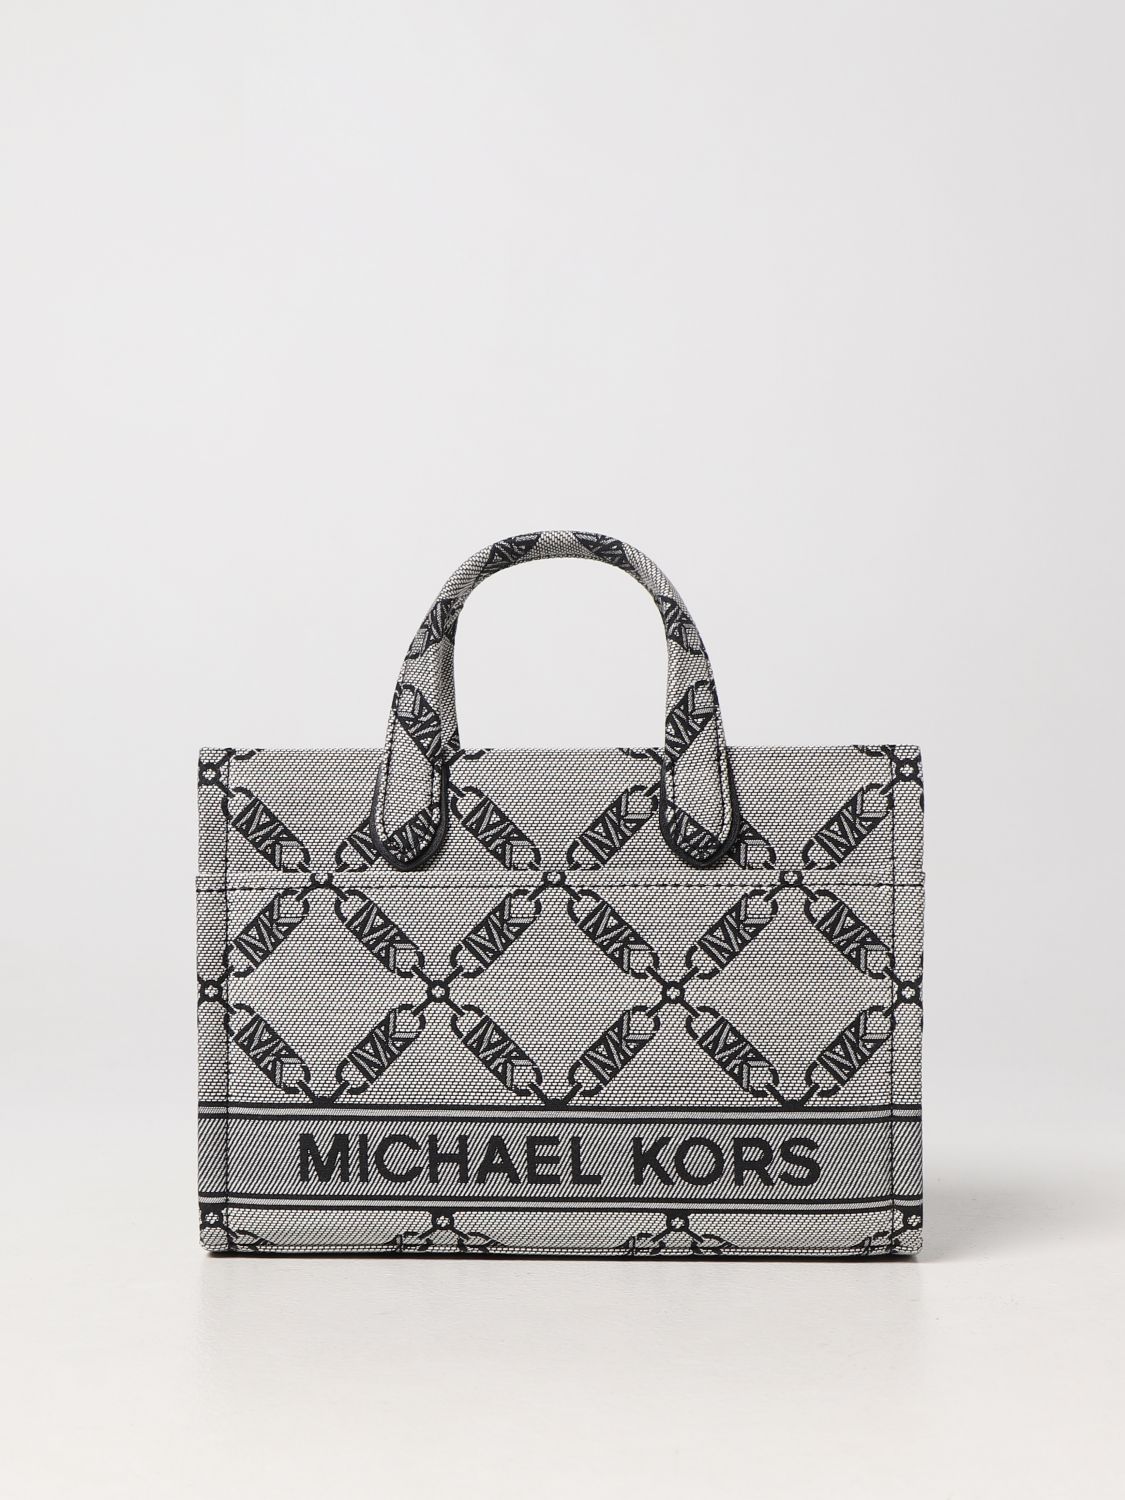 Michael Kors, Bags, Michael Kors Grey Tote